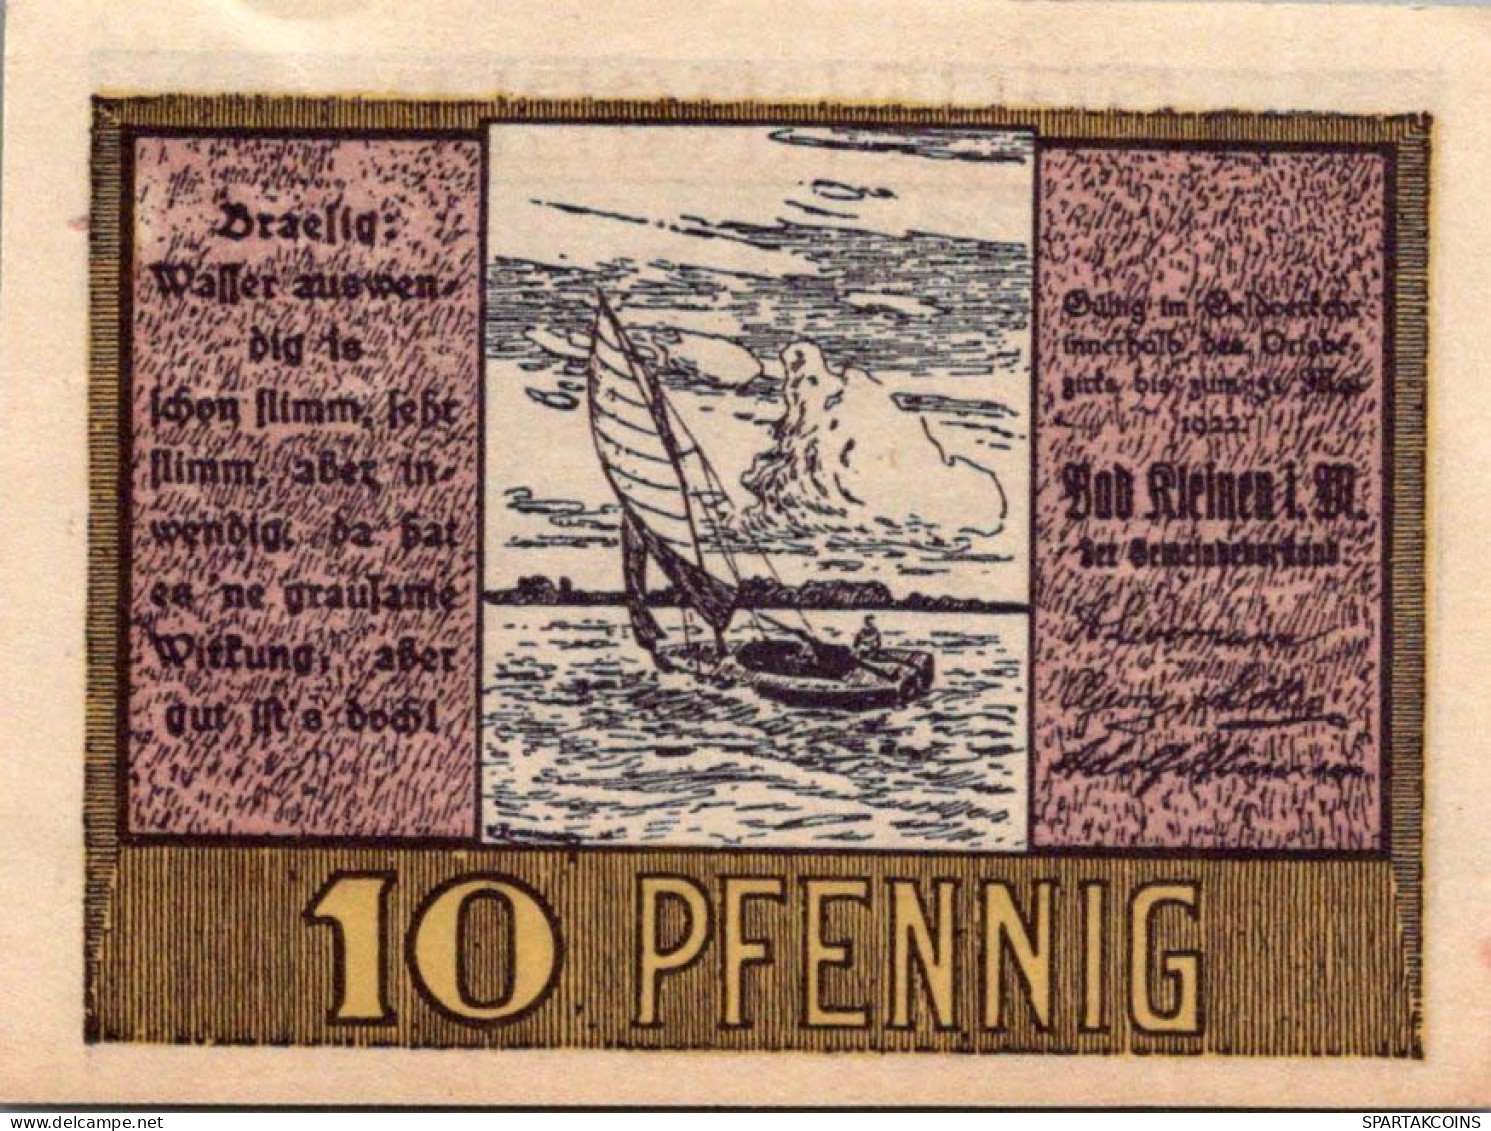 10 PFENNIG 1922 Stadt BAD KLEINEN Mecklenburg-Schwerin UNC DEUTSCHLAND #PI494 - [11] Local Banknote Issues